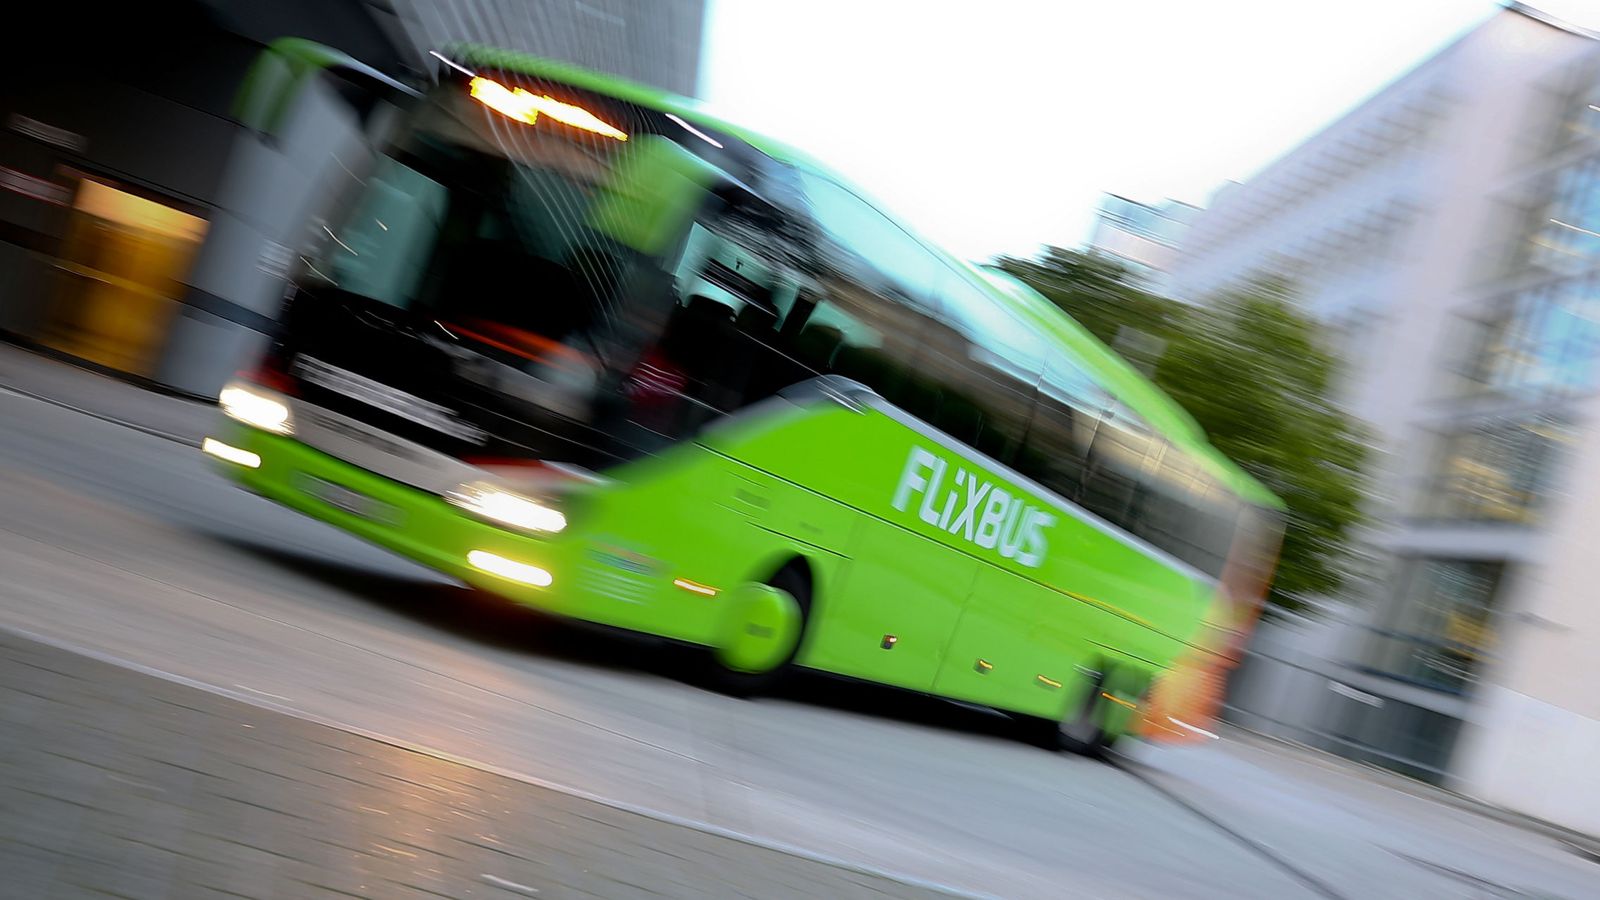 Foto: Autobús de Flixbus, compañía del autocar accidentado este domingo. (Reuters)